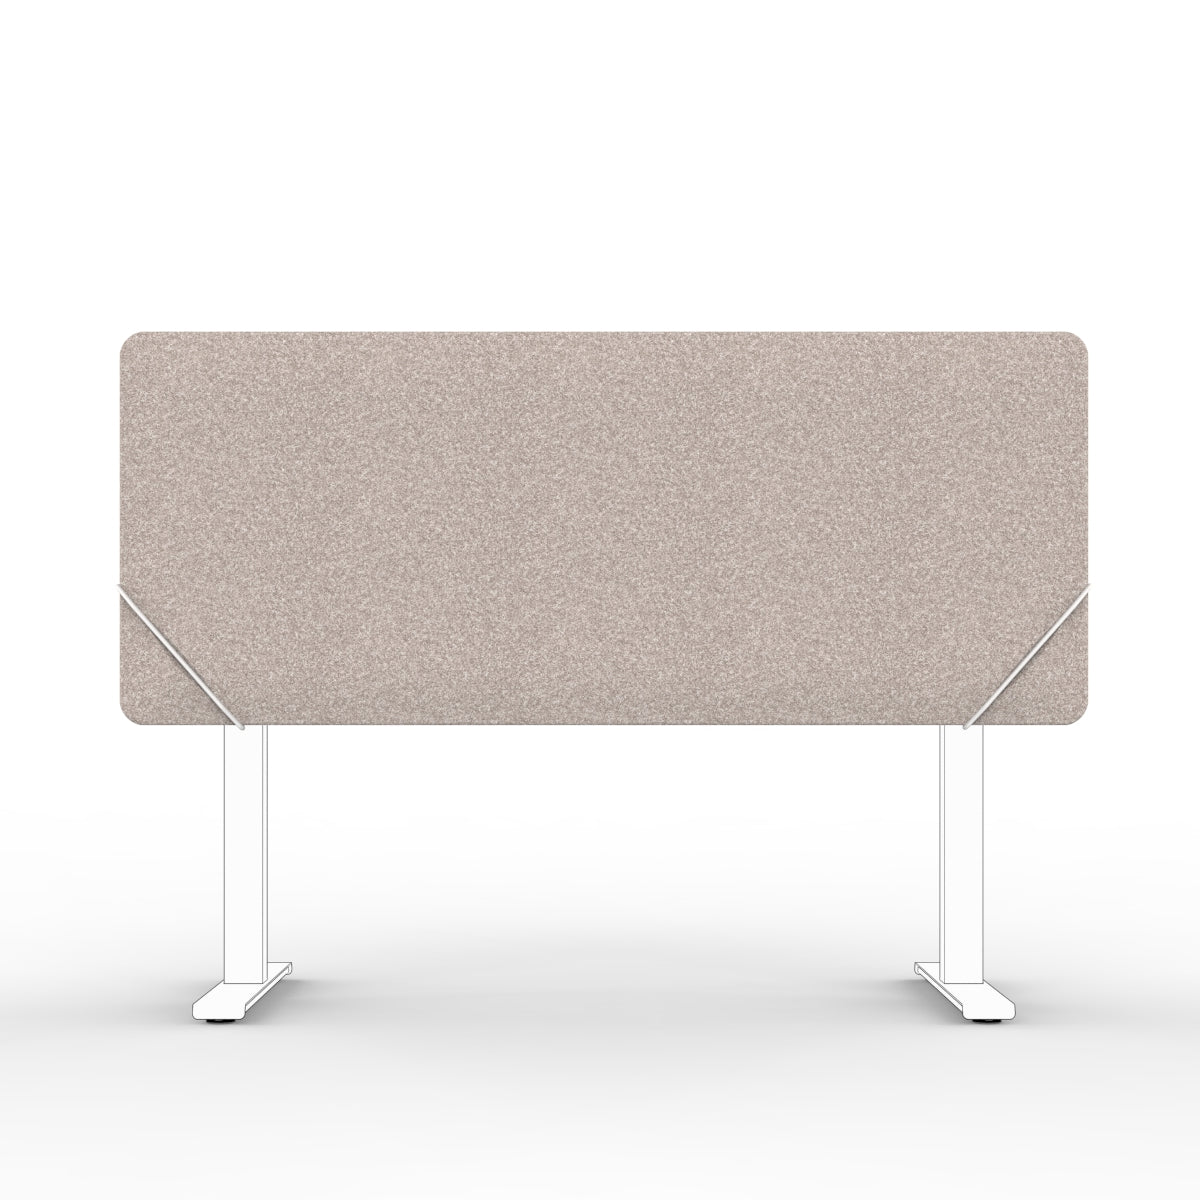 Sound absorbing table divider in dark beige with white slide on table mounts. Bordskjerm for skrivebord. Avskjerming og lyddemping på kontor